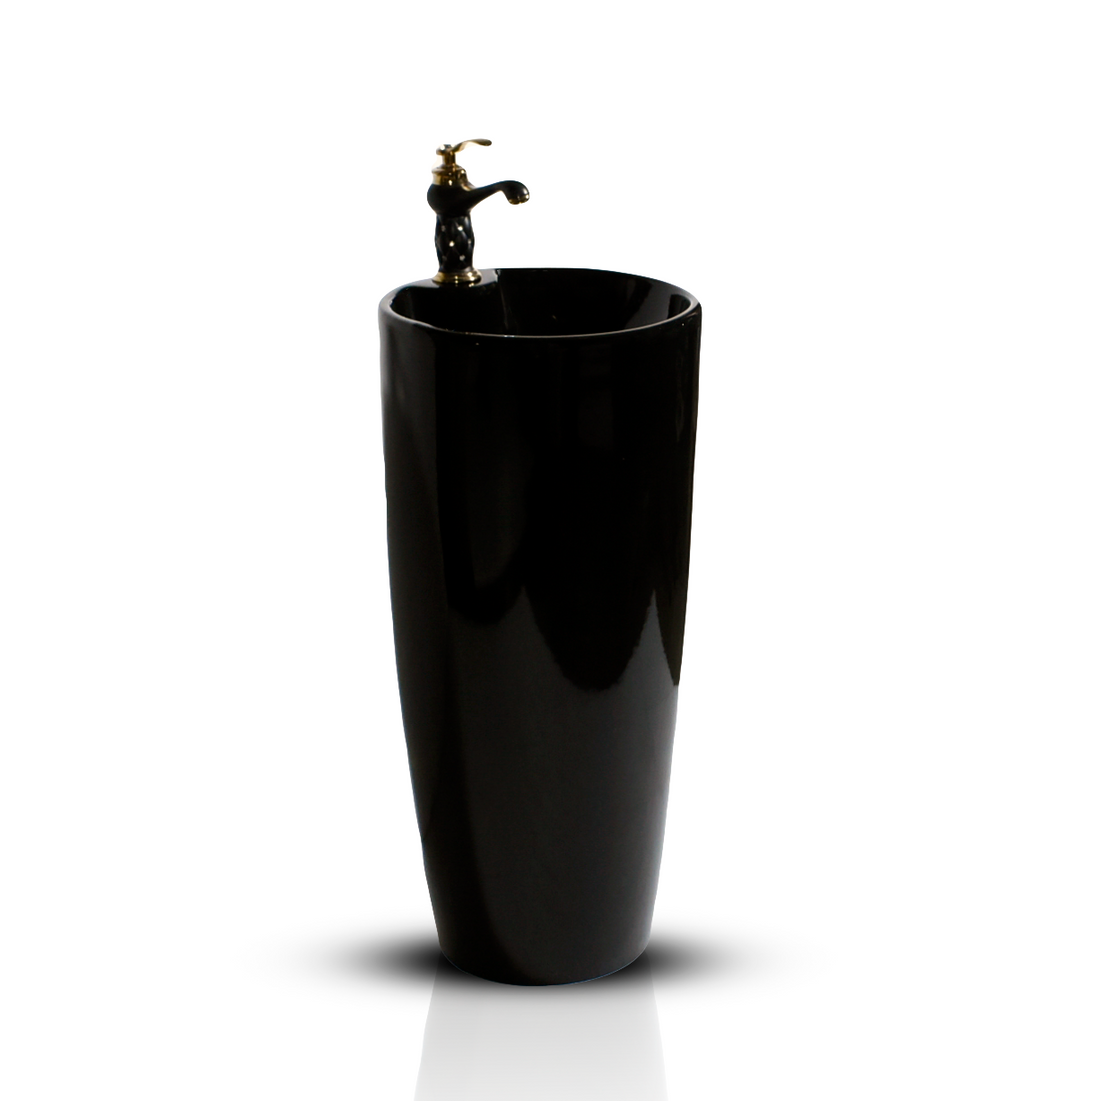 pedestal wash basin design black color